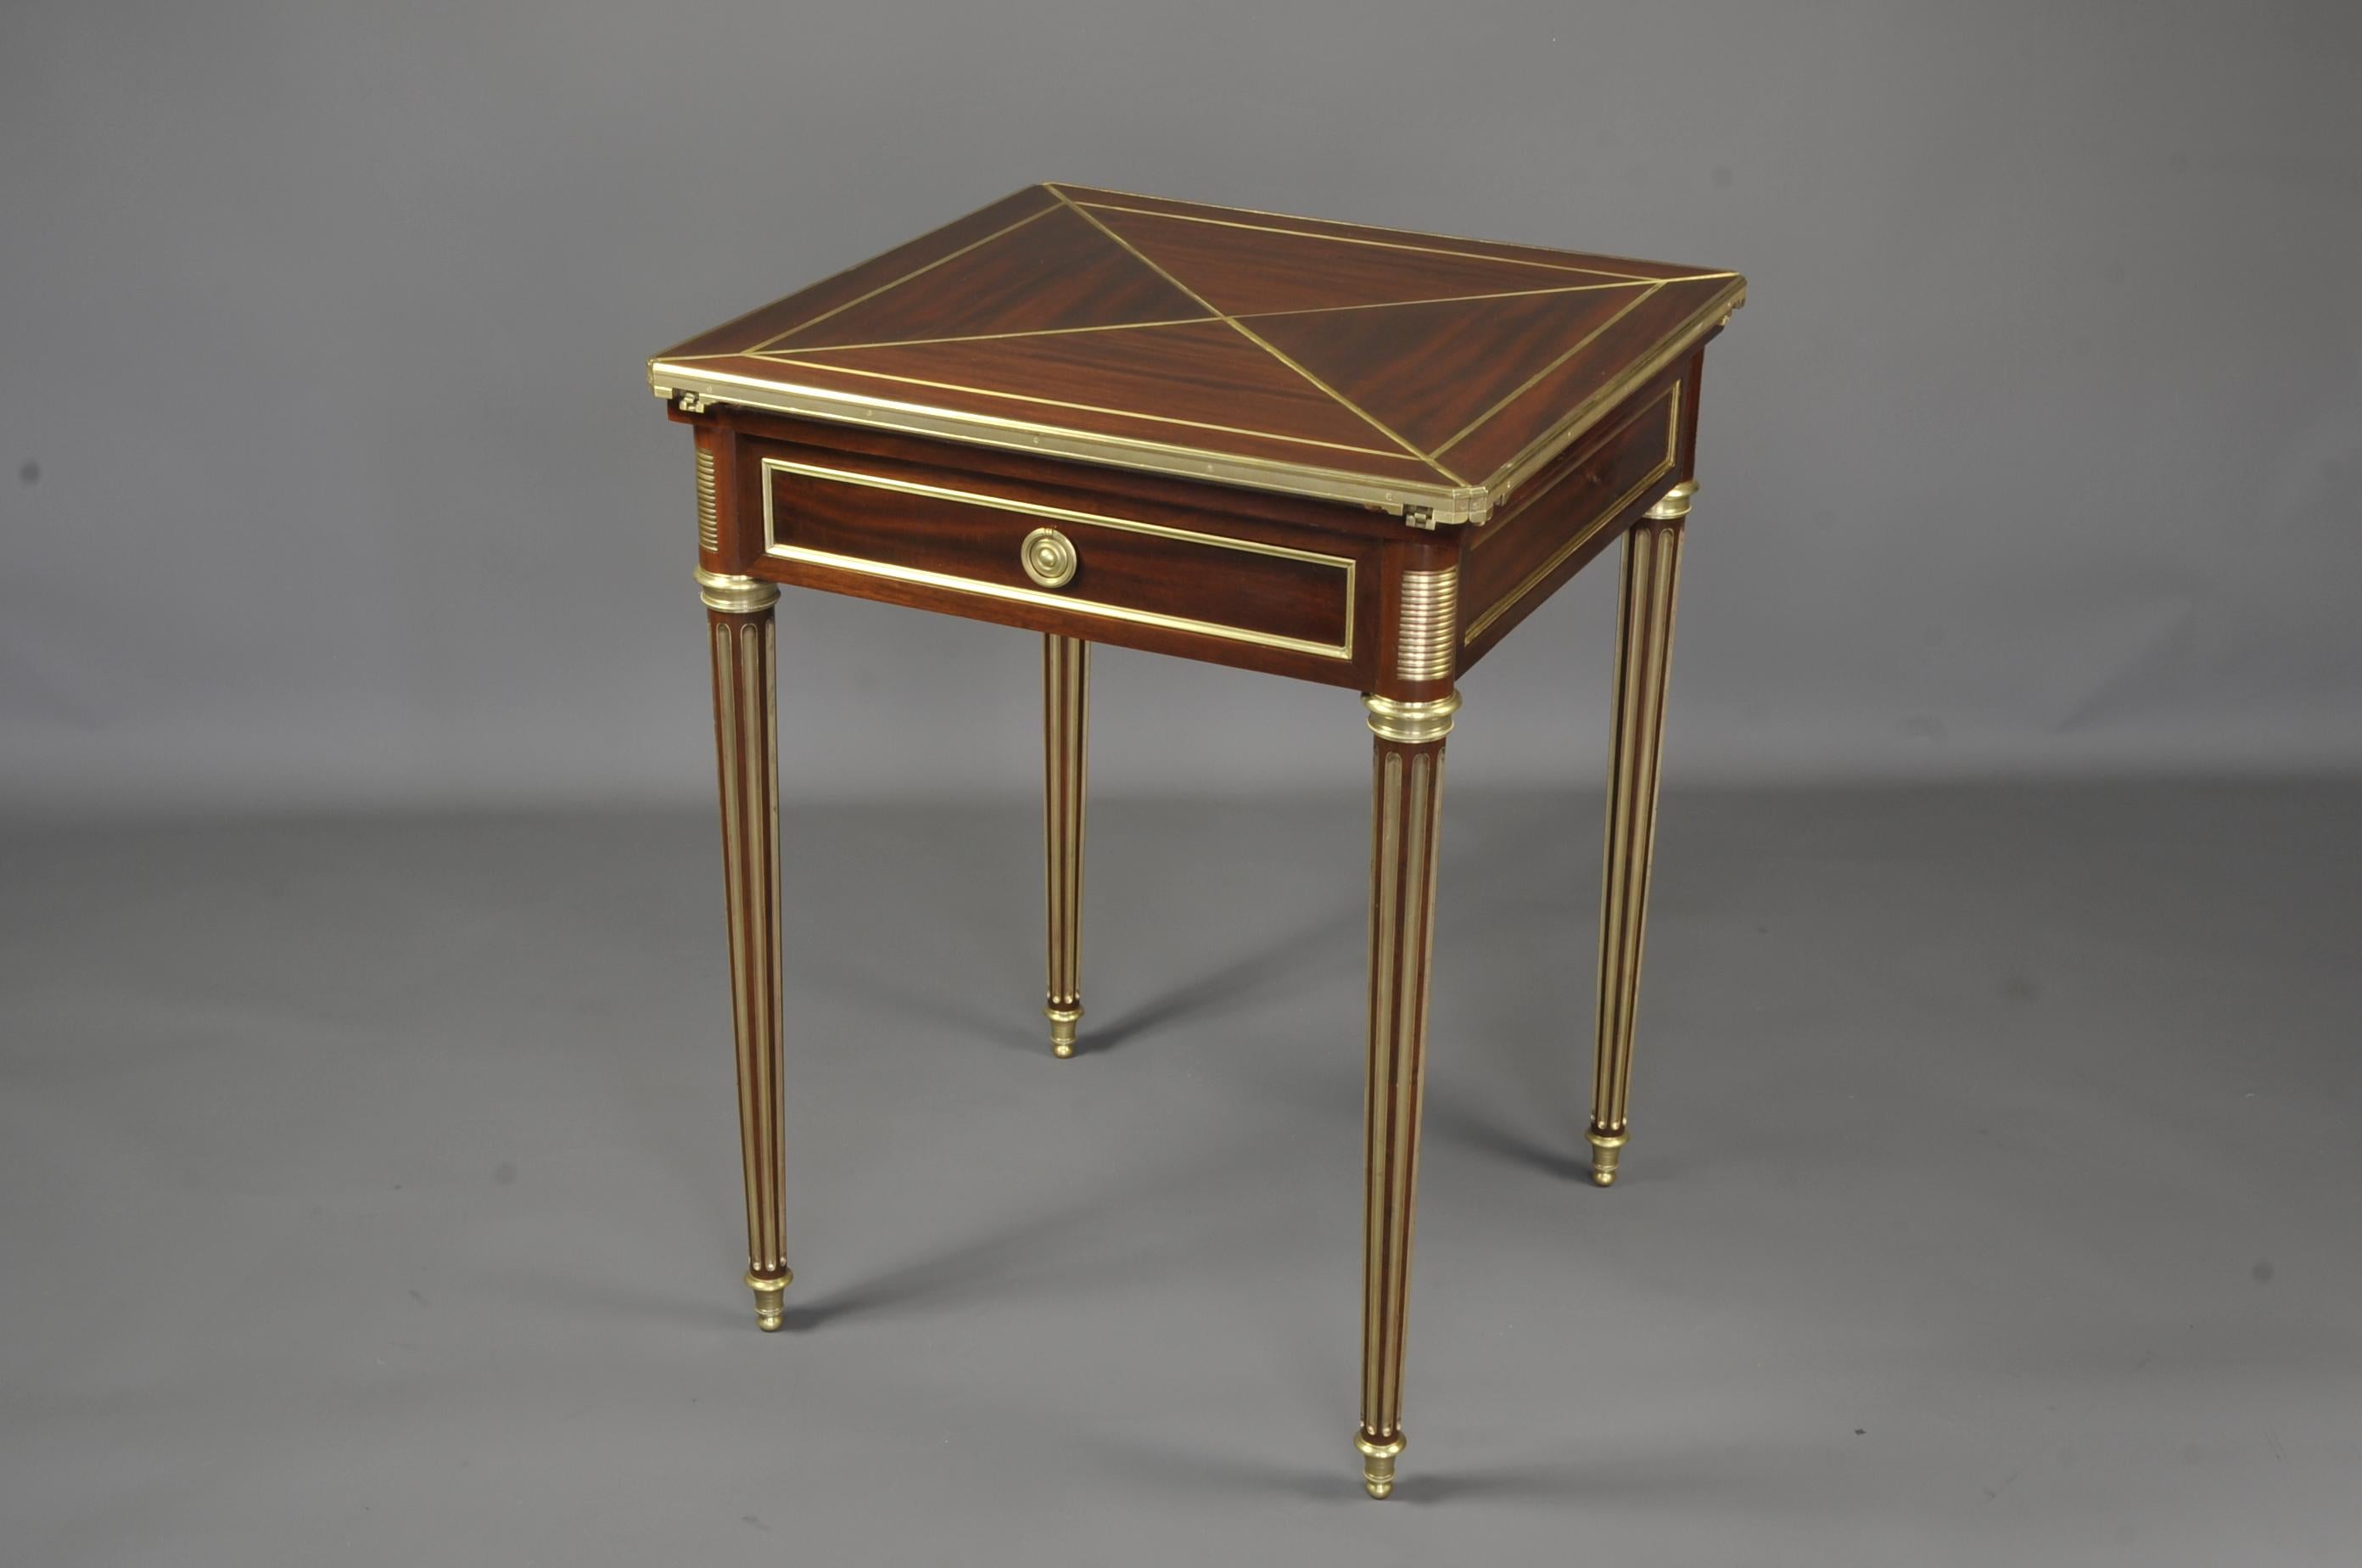 Paul Sormani (1817-1866)
Très élégante table de jeu en acajou et placage d'acajou avec une ouverture dite 